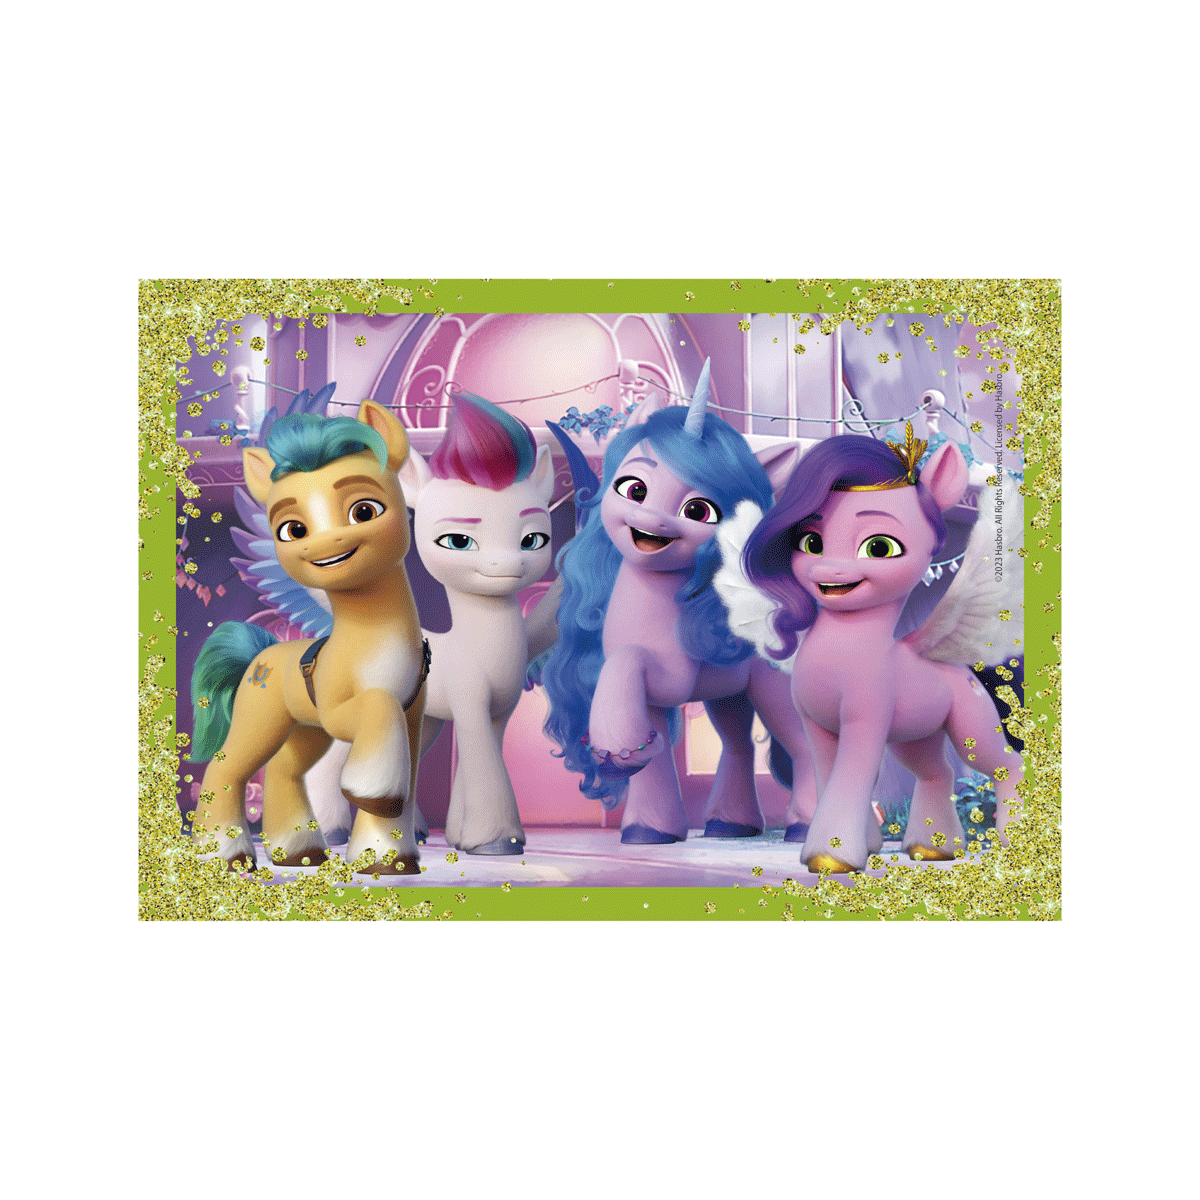 Clementoni supercolor puzzle my little pony - 1x12 + 1x16 + 1x20 + 1x24 pezzi, puzzle bambini 3 anni - CLEMENTONI